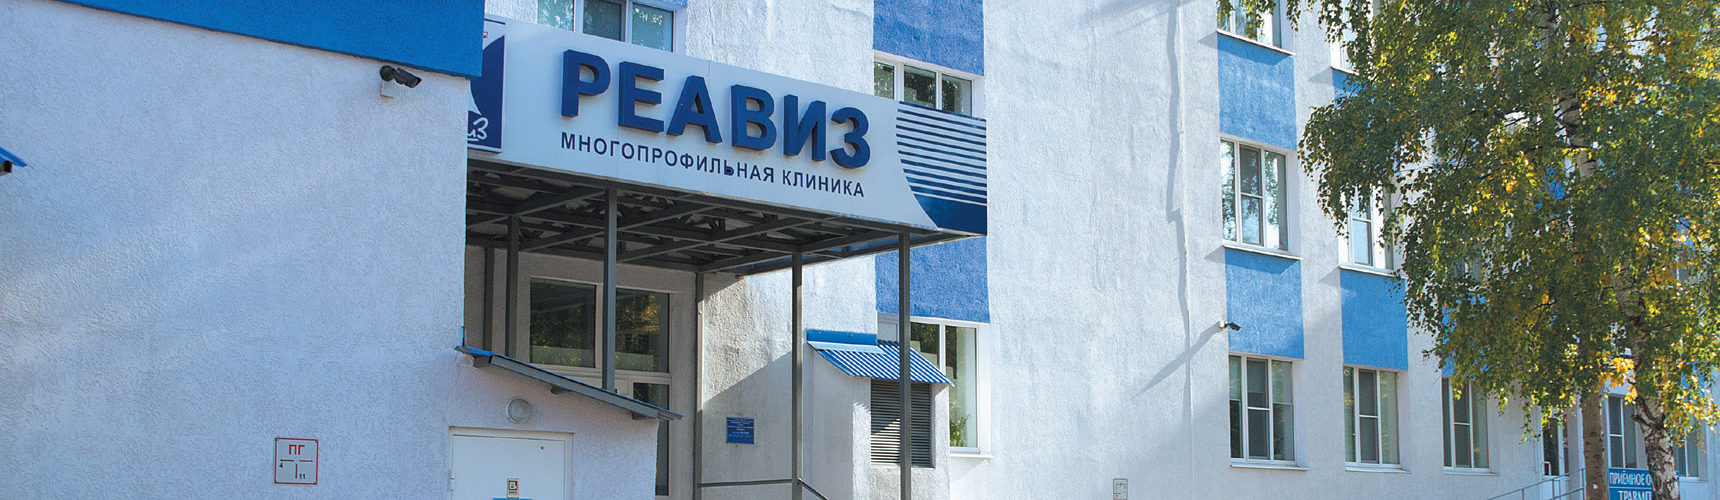 Медицинский университет «Реавиз» вновь вошел в ТОП-5 негосударственных ВУЗов России